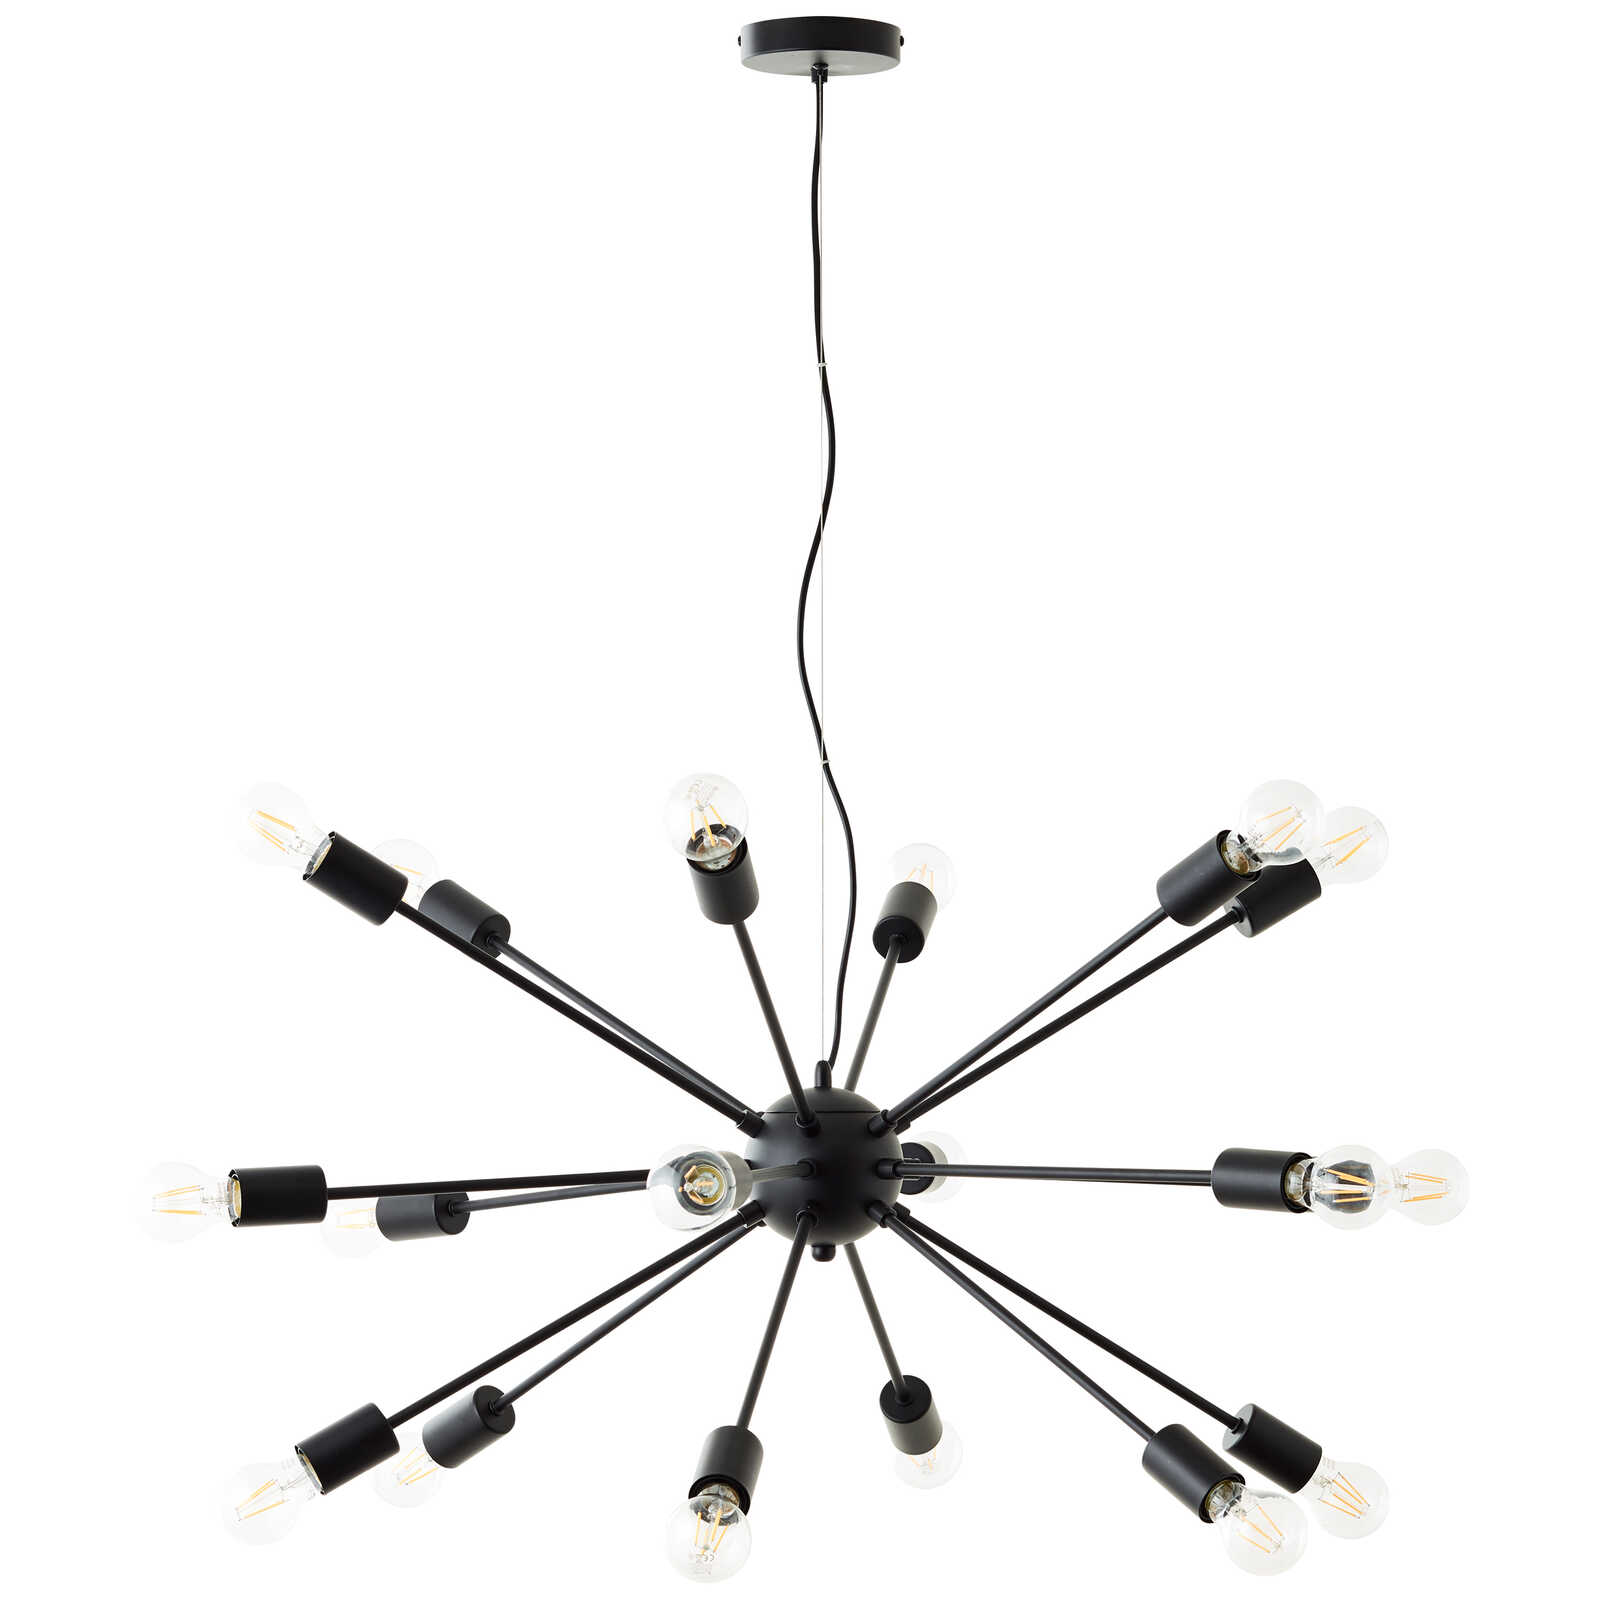             Metalen hanglamp - Fiete 1 - Zwart
        